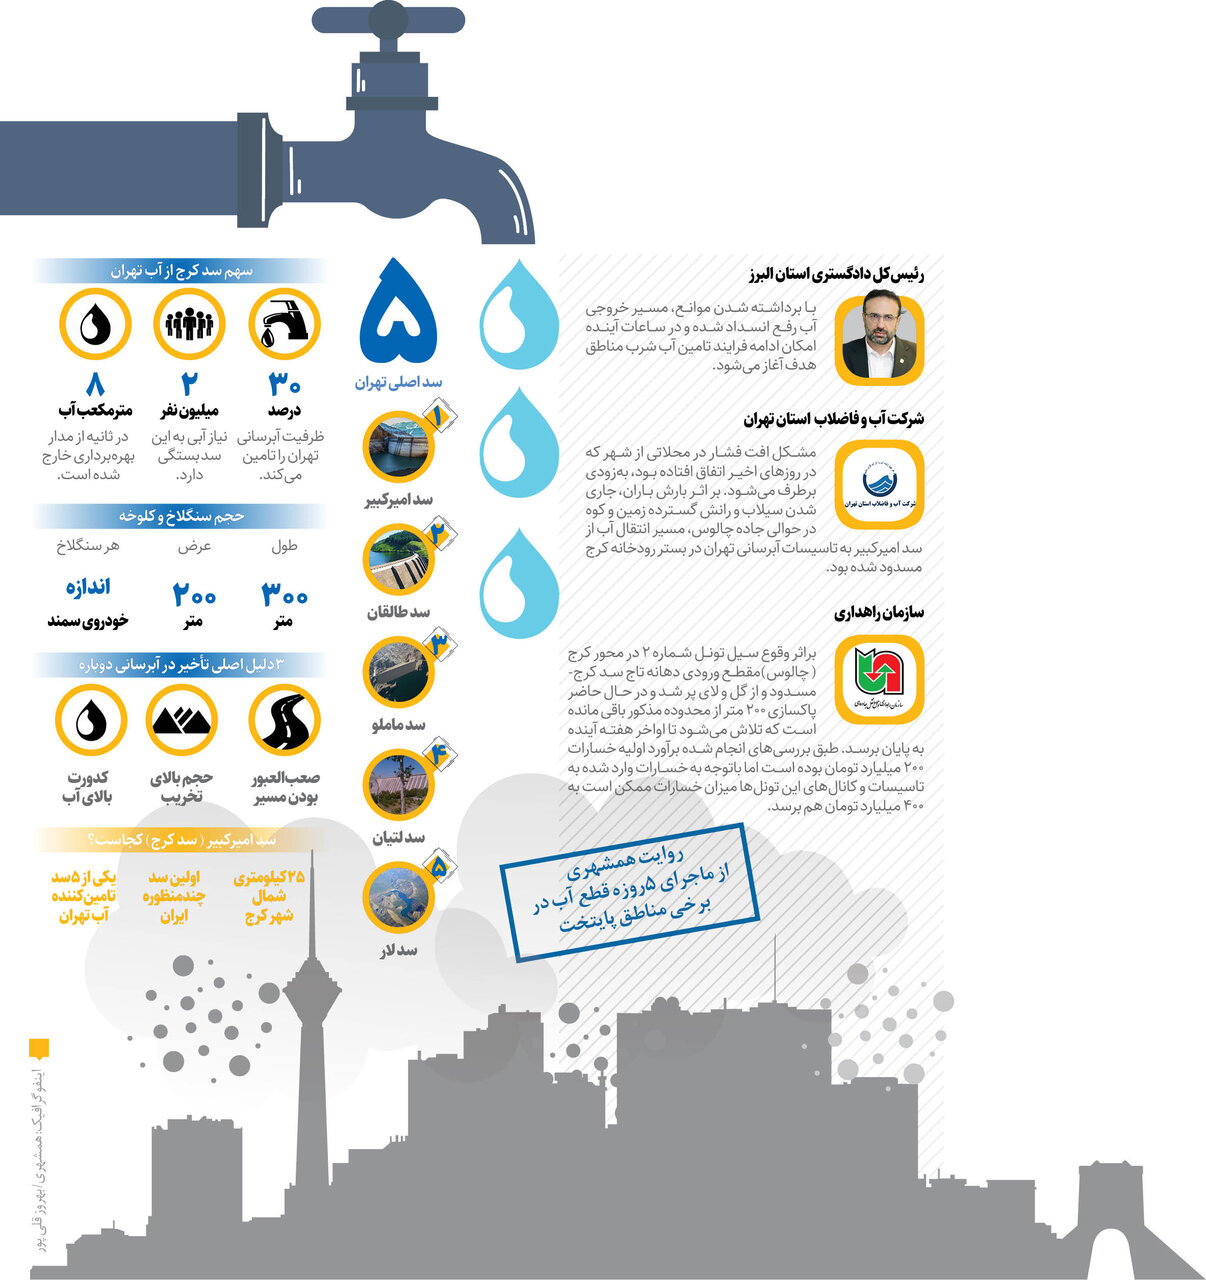 واقعیت قطعی آب تهران | افزایش میزان کدورت آب در بالادست سد امیرکبیر تا ۷برابر حد مجاز است